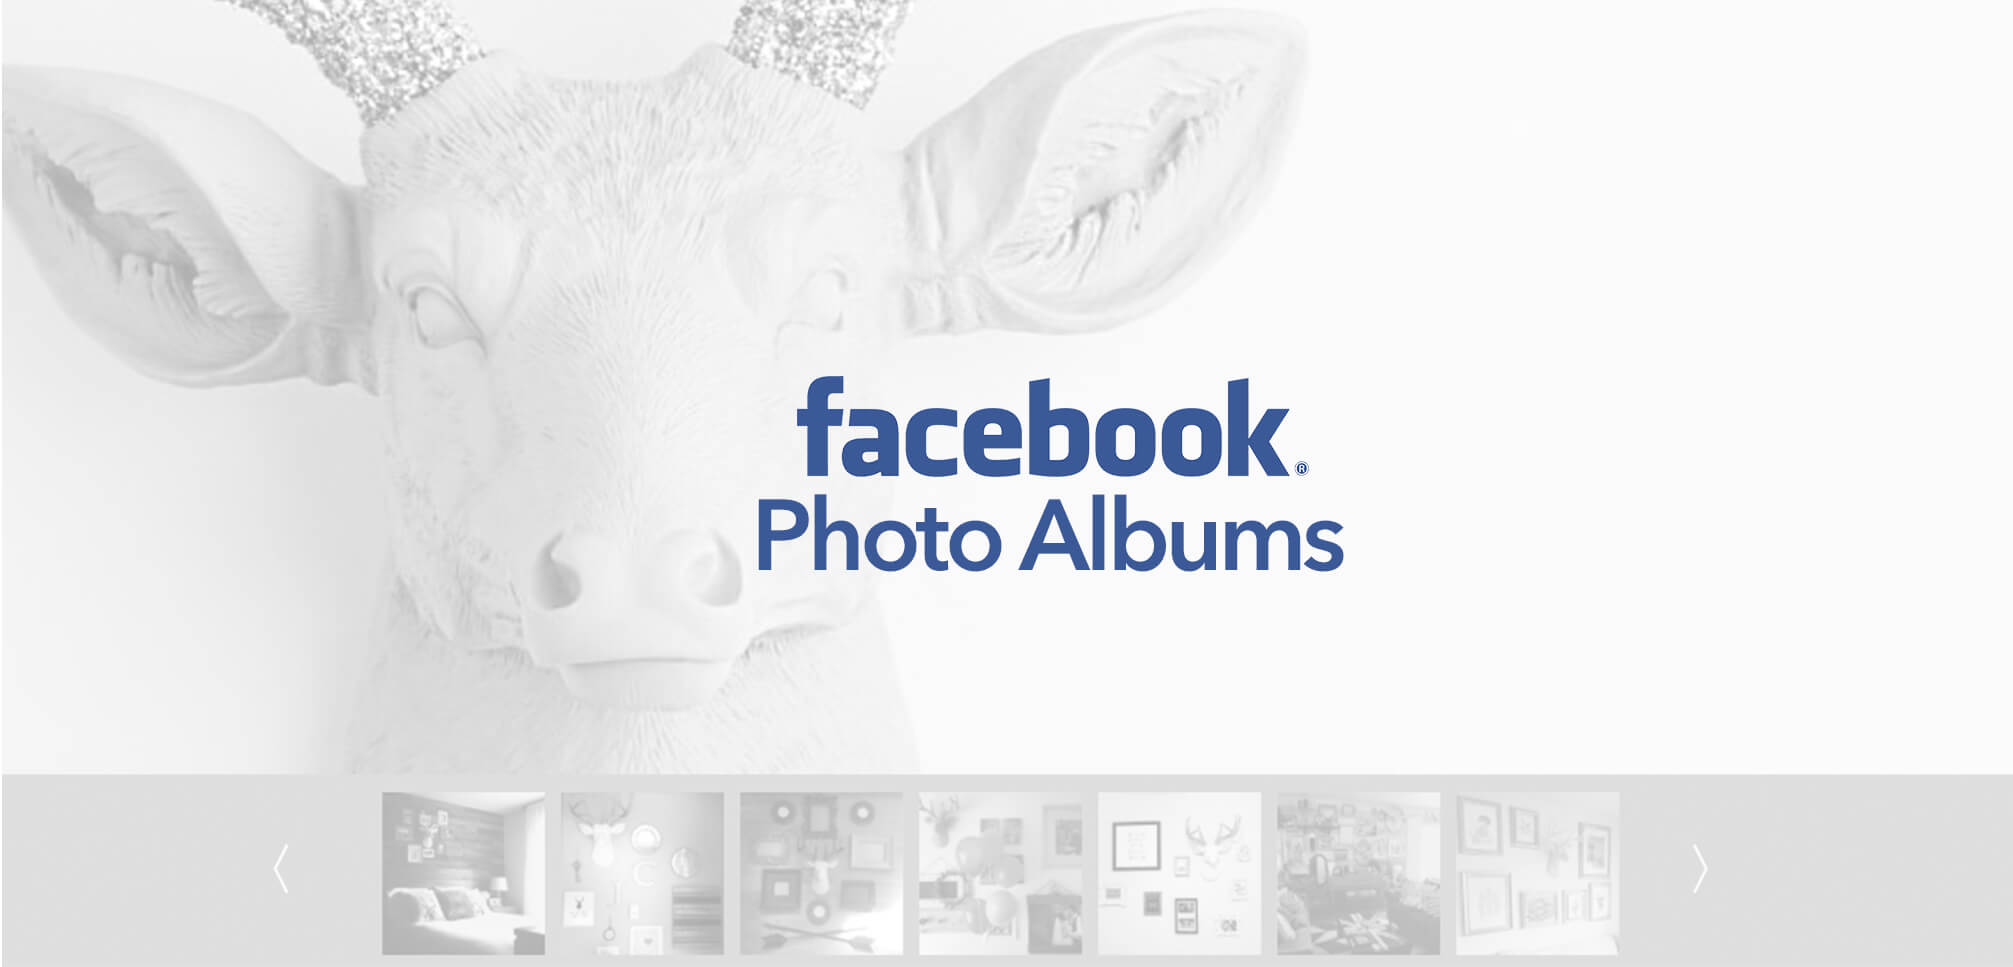 Facebook Photo Albums widget update